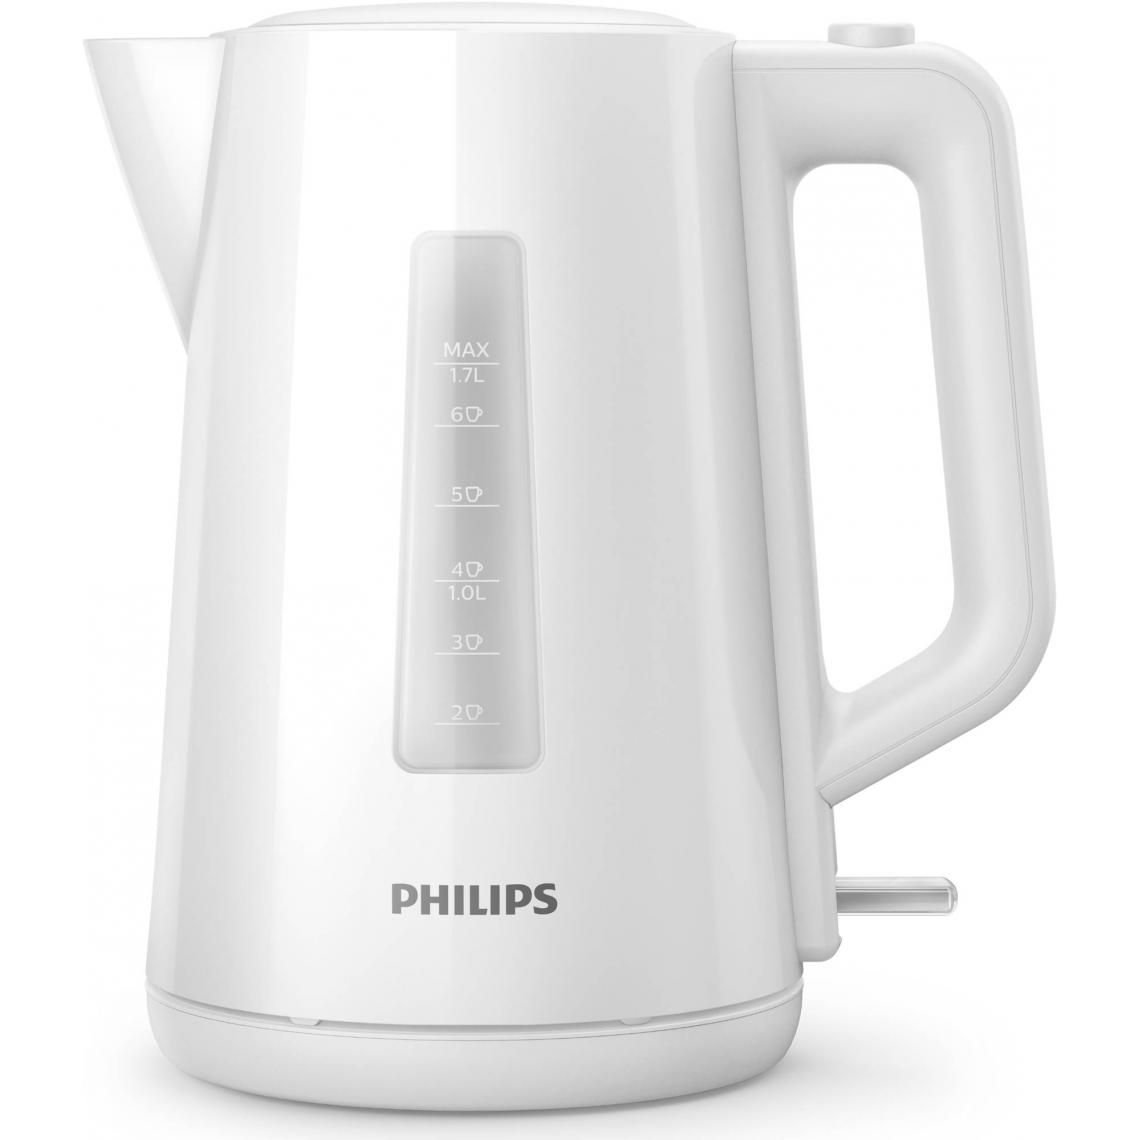 Philips - PHILIPS HD9318/00 Bouilloire Daily 1,7L Blanche - Bouilloire